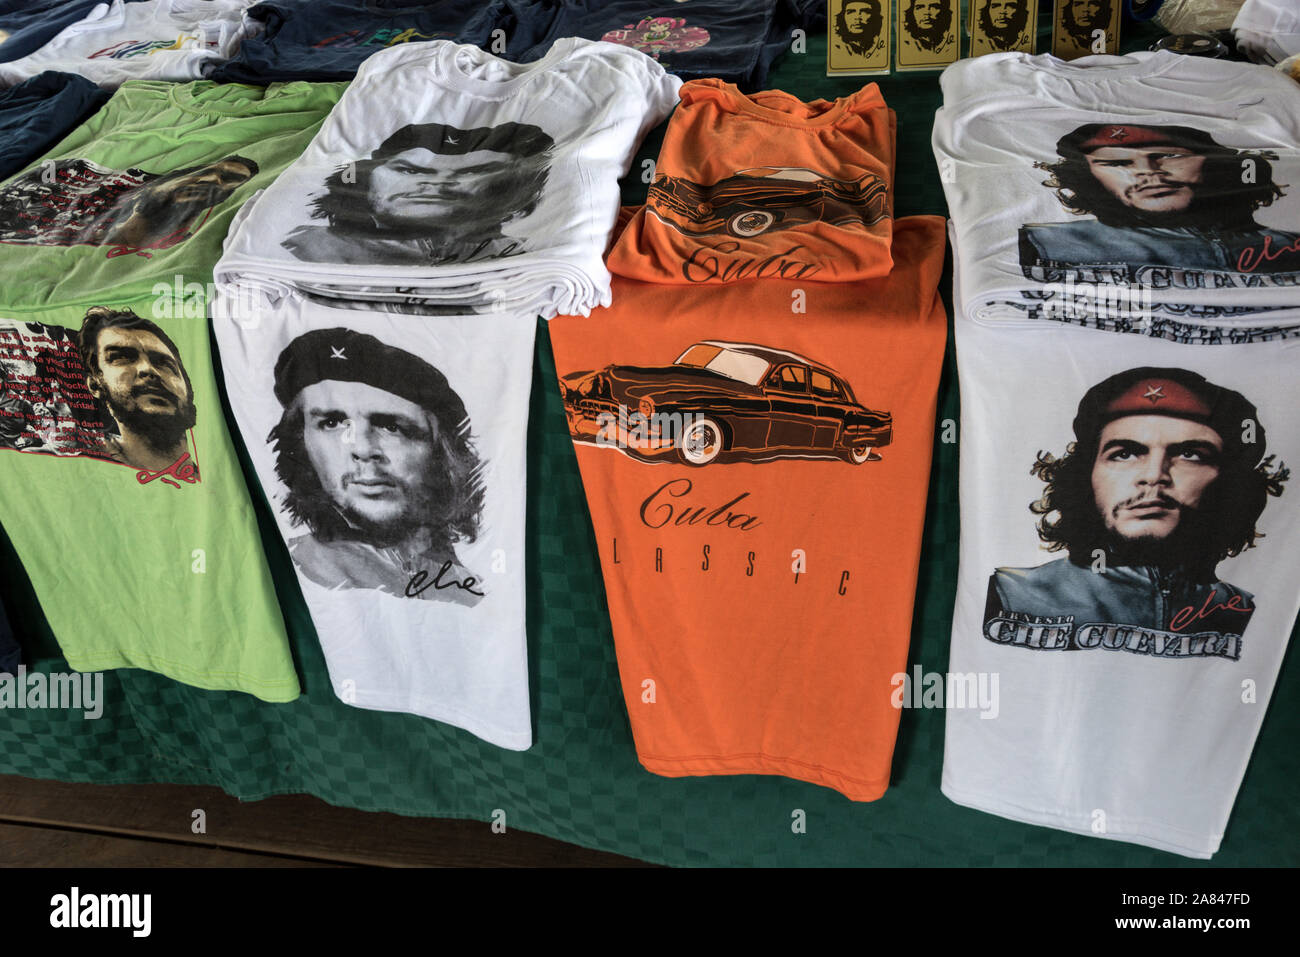 Maglietta cubana immagini e fotografie stock ad alta risoluzione - Alamy